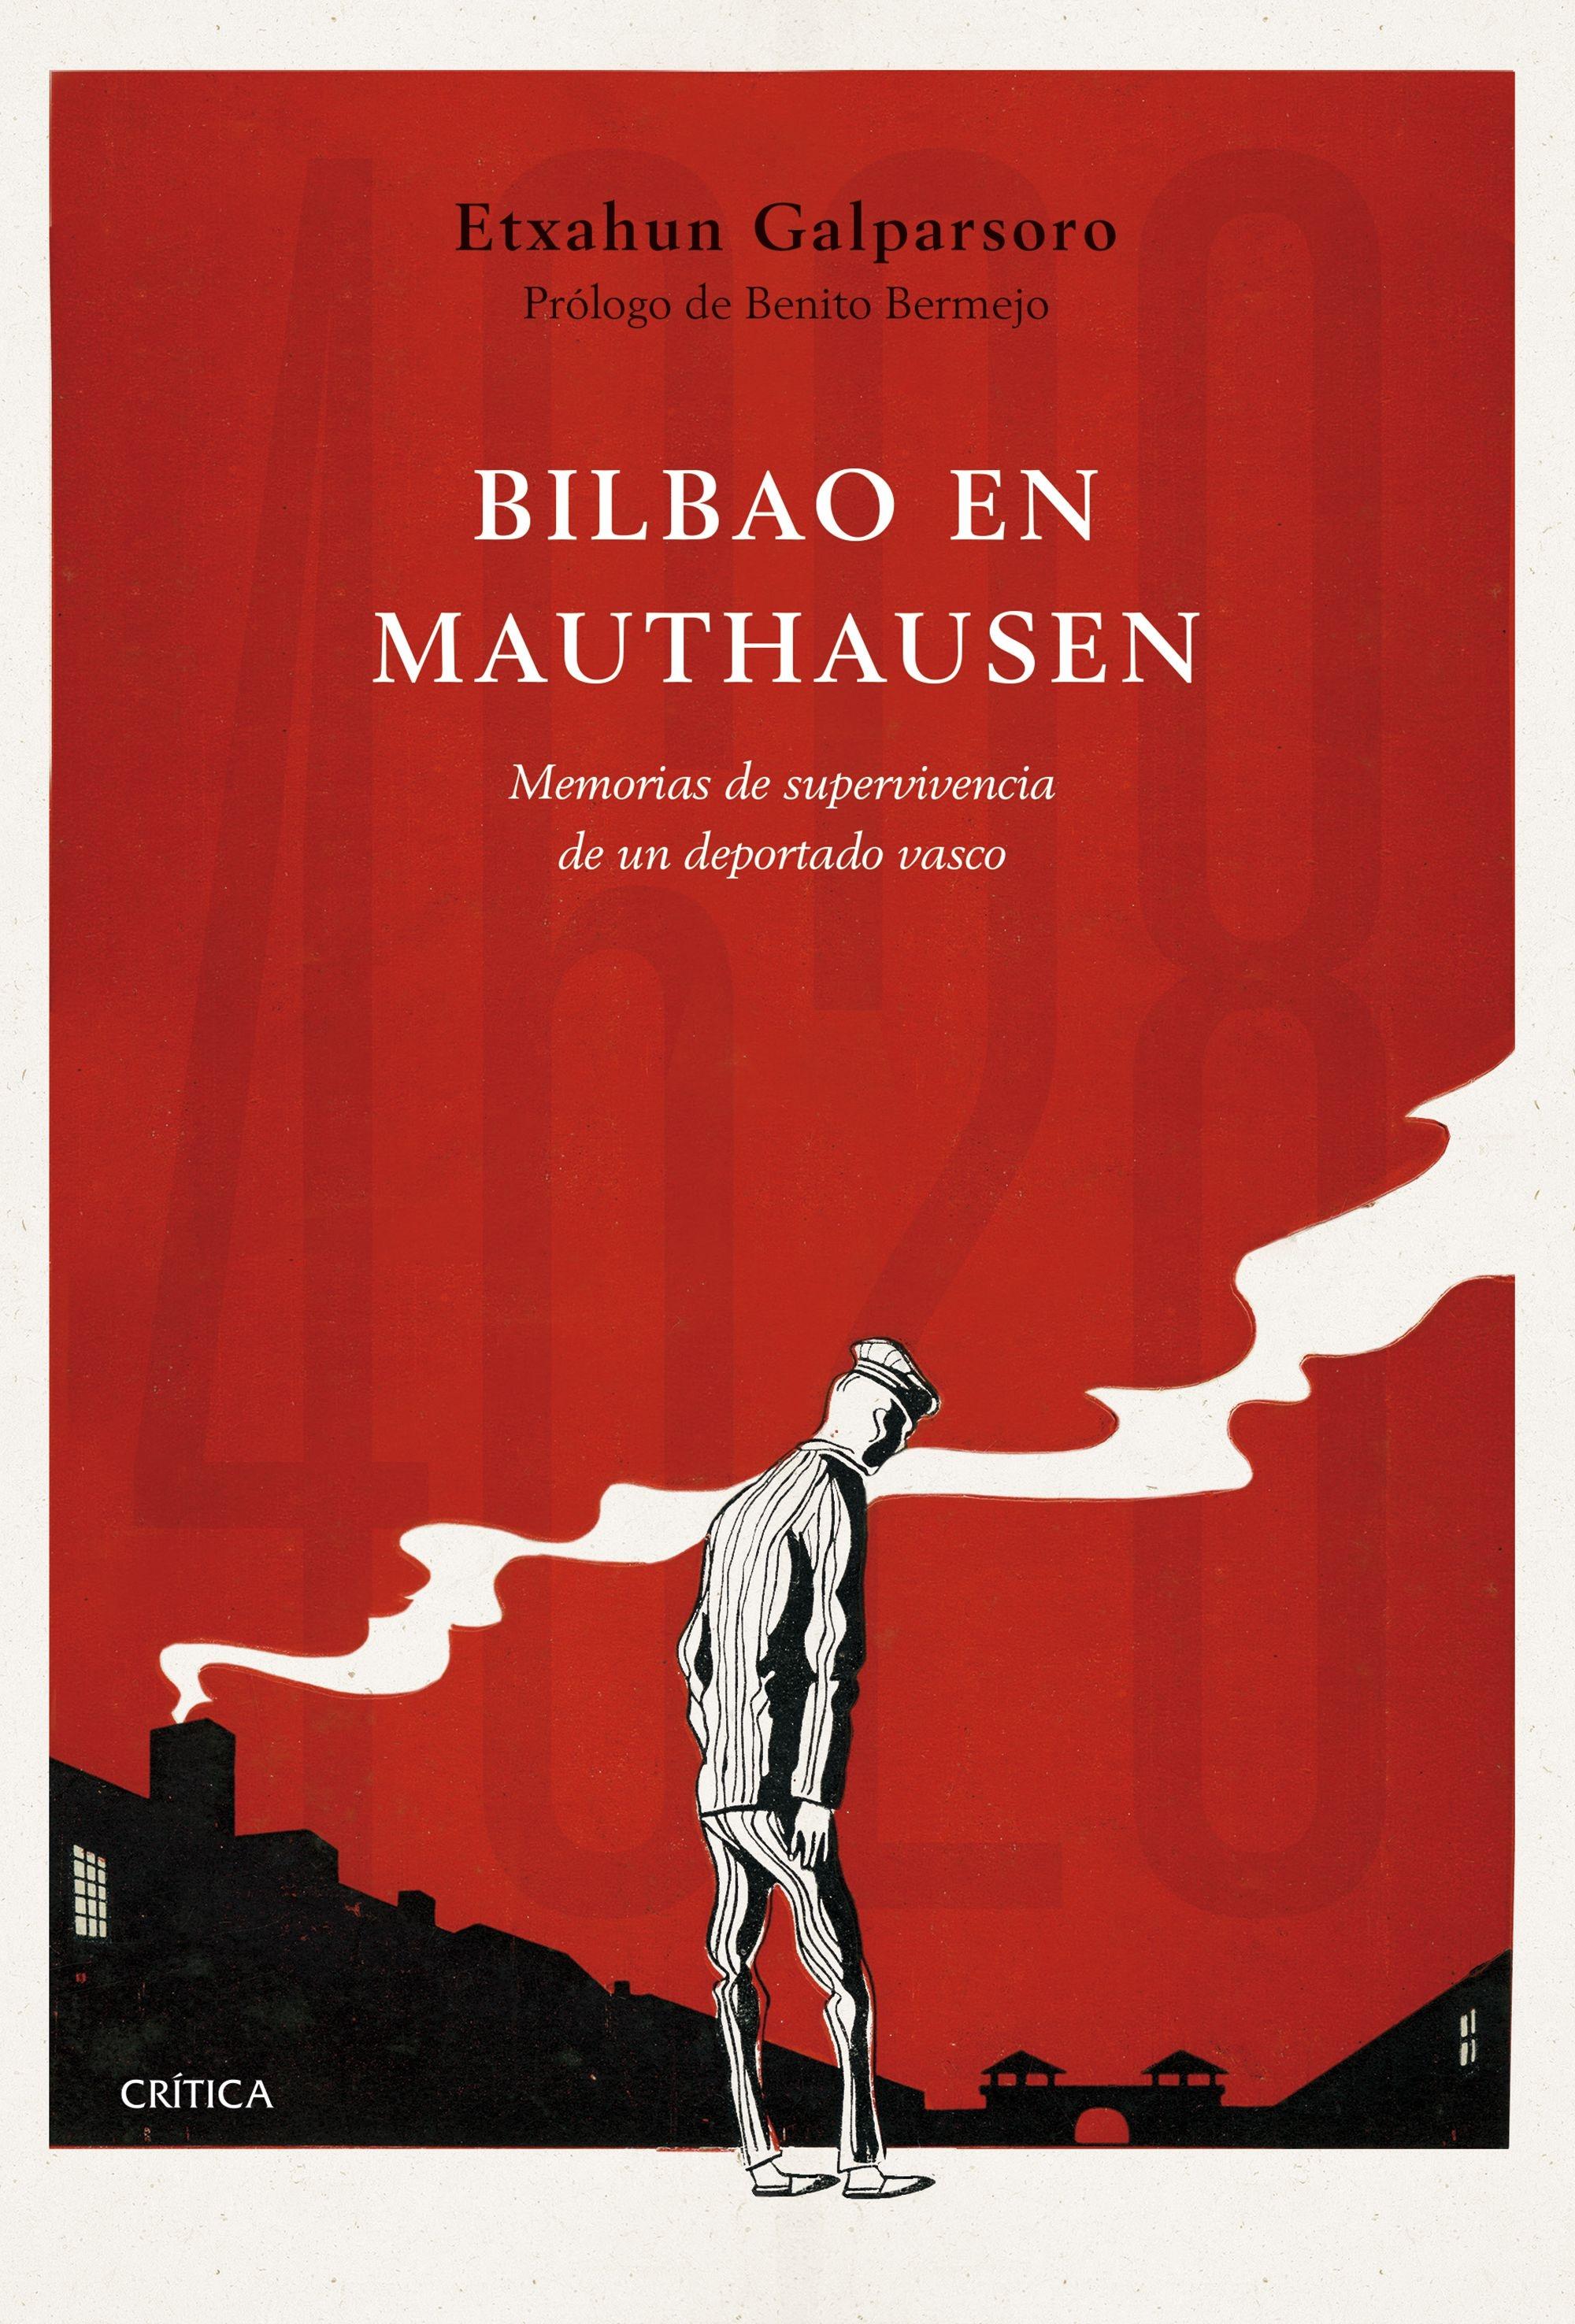 Bilbao en Mauthausen "Memorias de supervivencia de un deportado vasco"